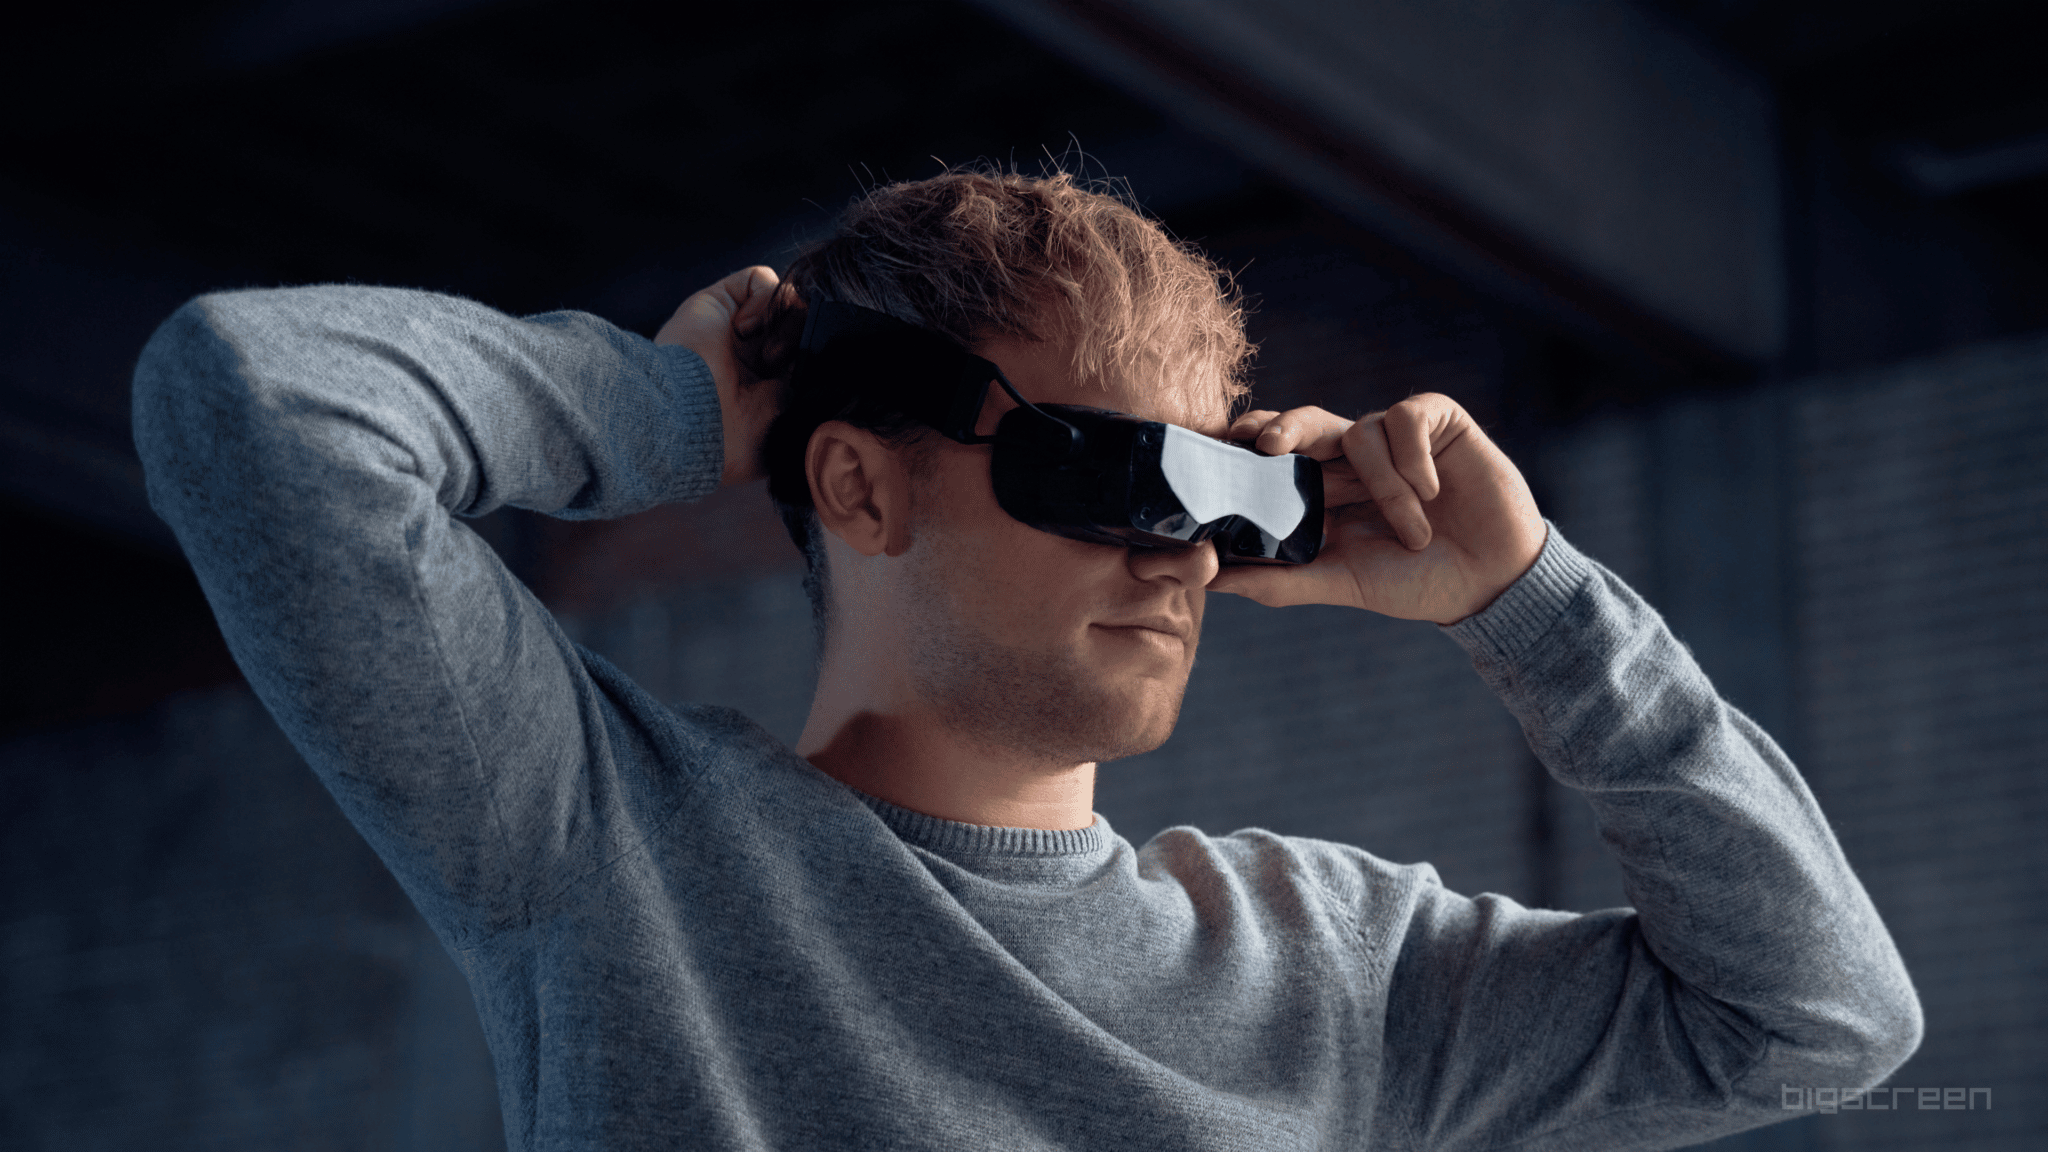 Storskärm bortom: 127 gram visir, 2.6K per öga OLED VR-headset med SteamVR-spårning